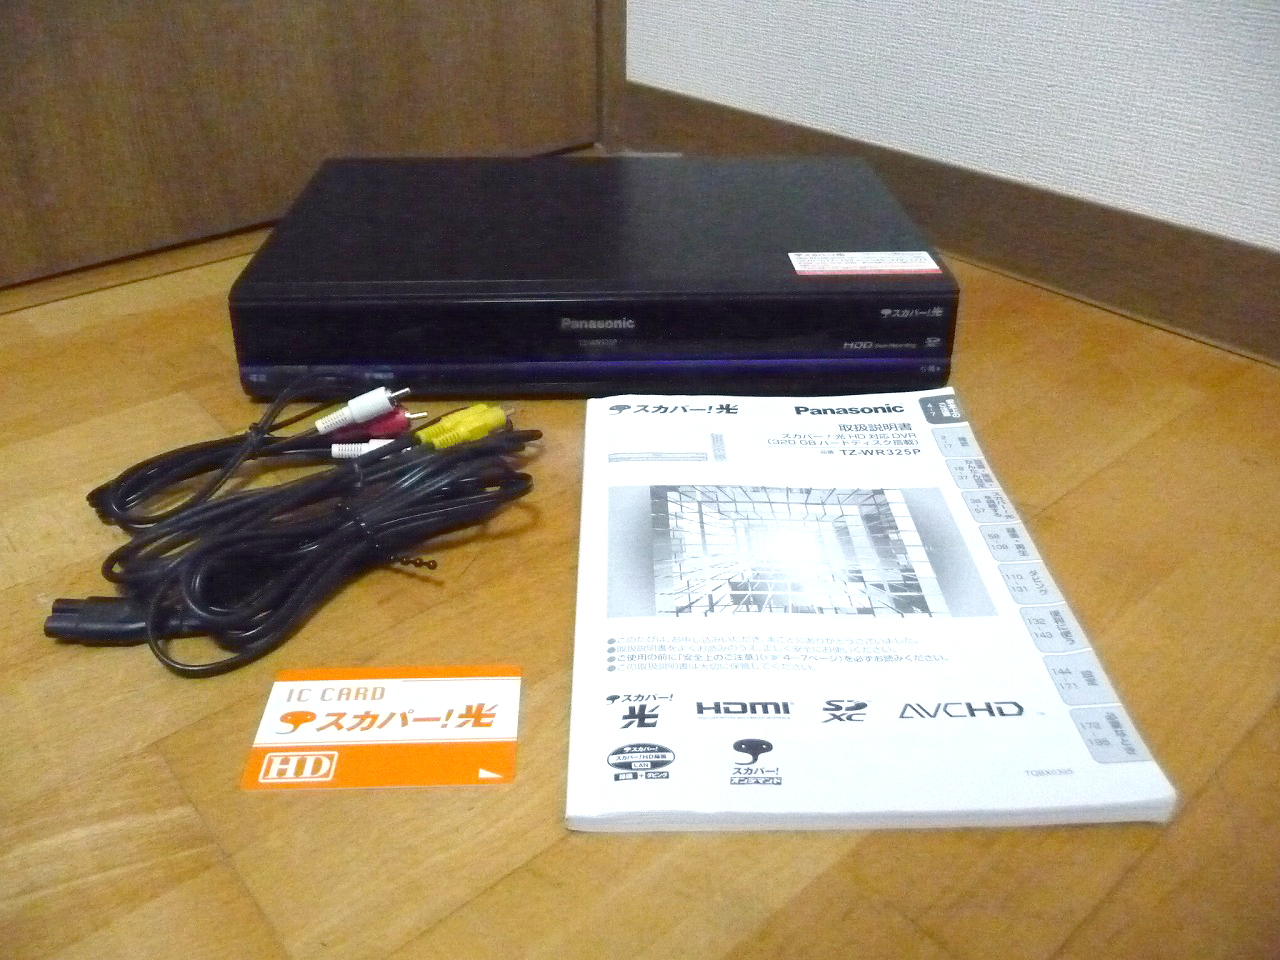 美品 Panasonic スカパー!光HD対応DVR TZ-WR325P | solabot.com